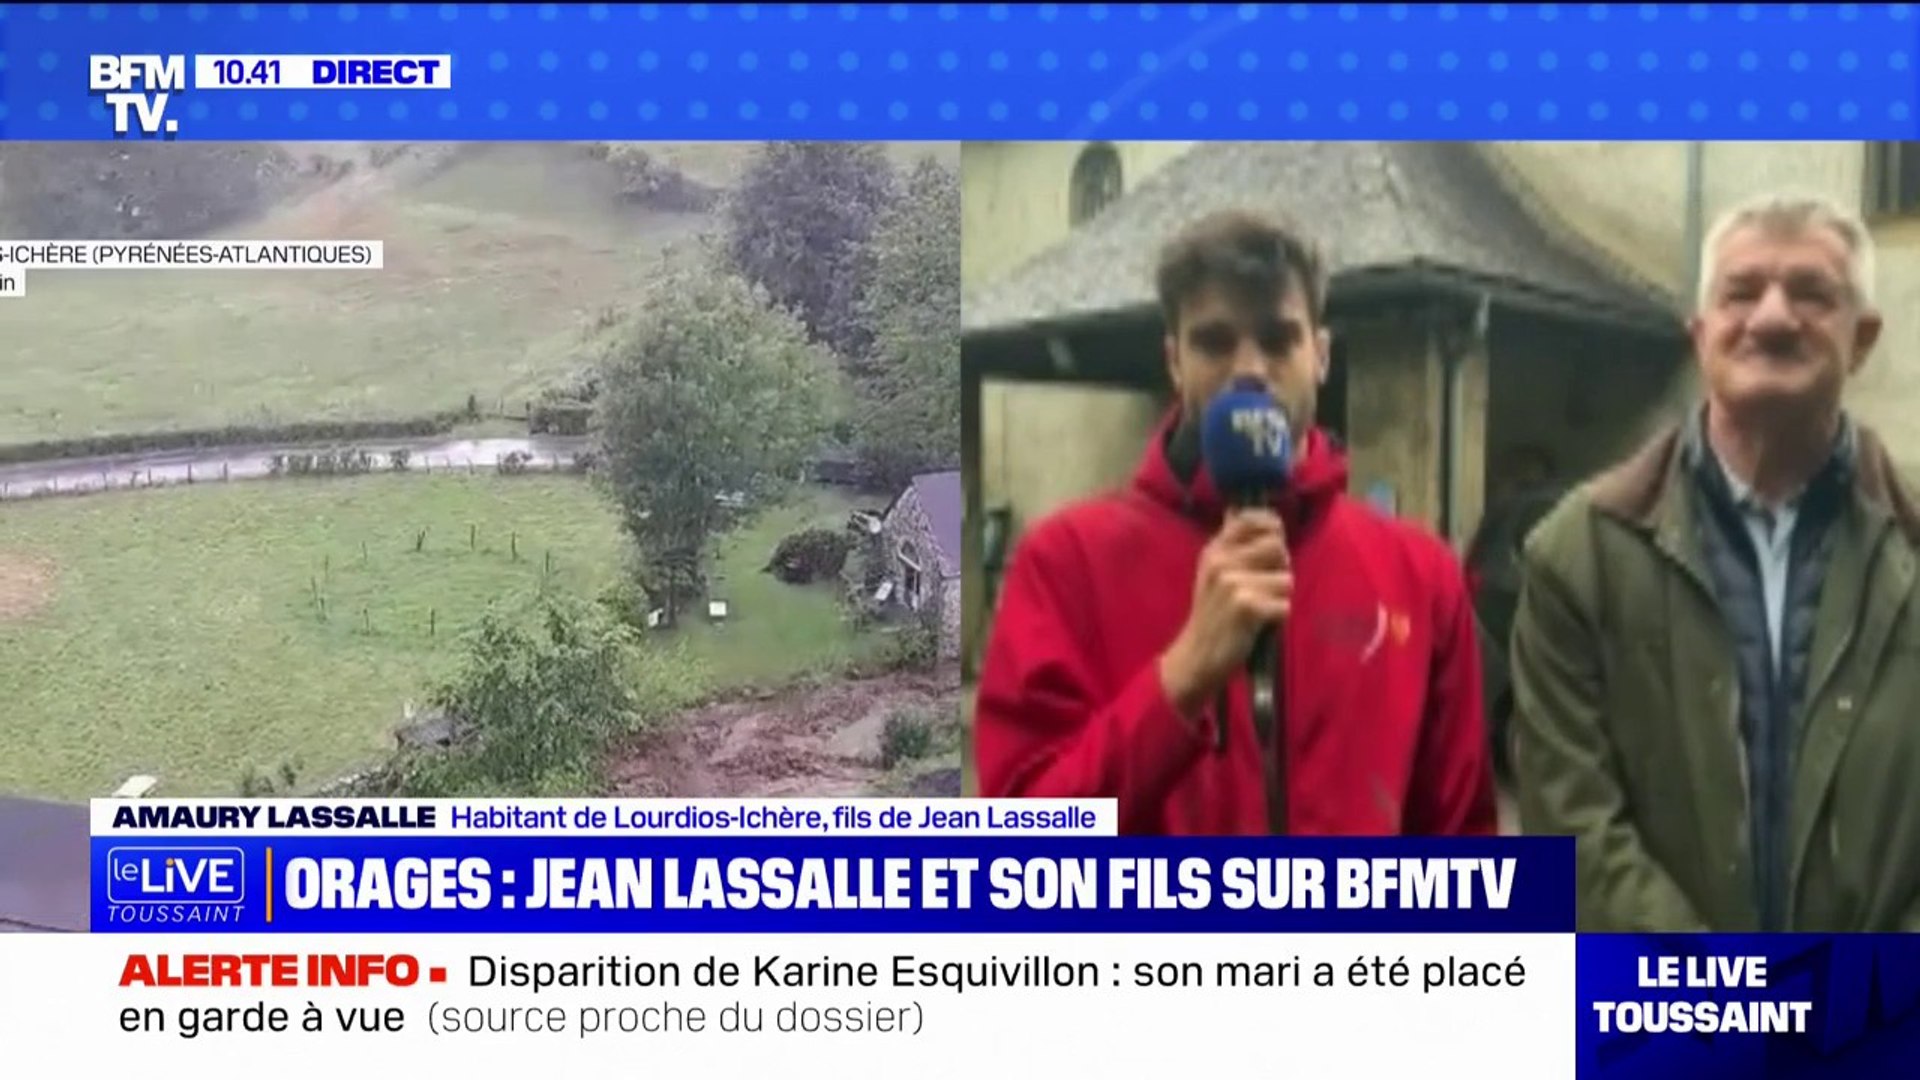 Les dégâts sont assez considérables": Amaury Lassalle, fils de Jean Lassalle  et habitant de Lourdios-Ichère (Pyrénées-Atlantiques) témoigne des  inondations provoquées par les orages - Vidéo Dailymotion